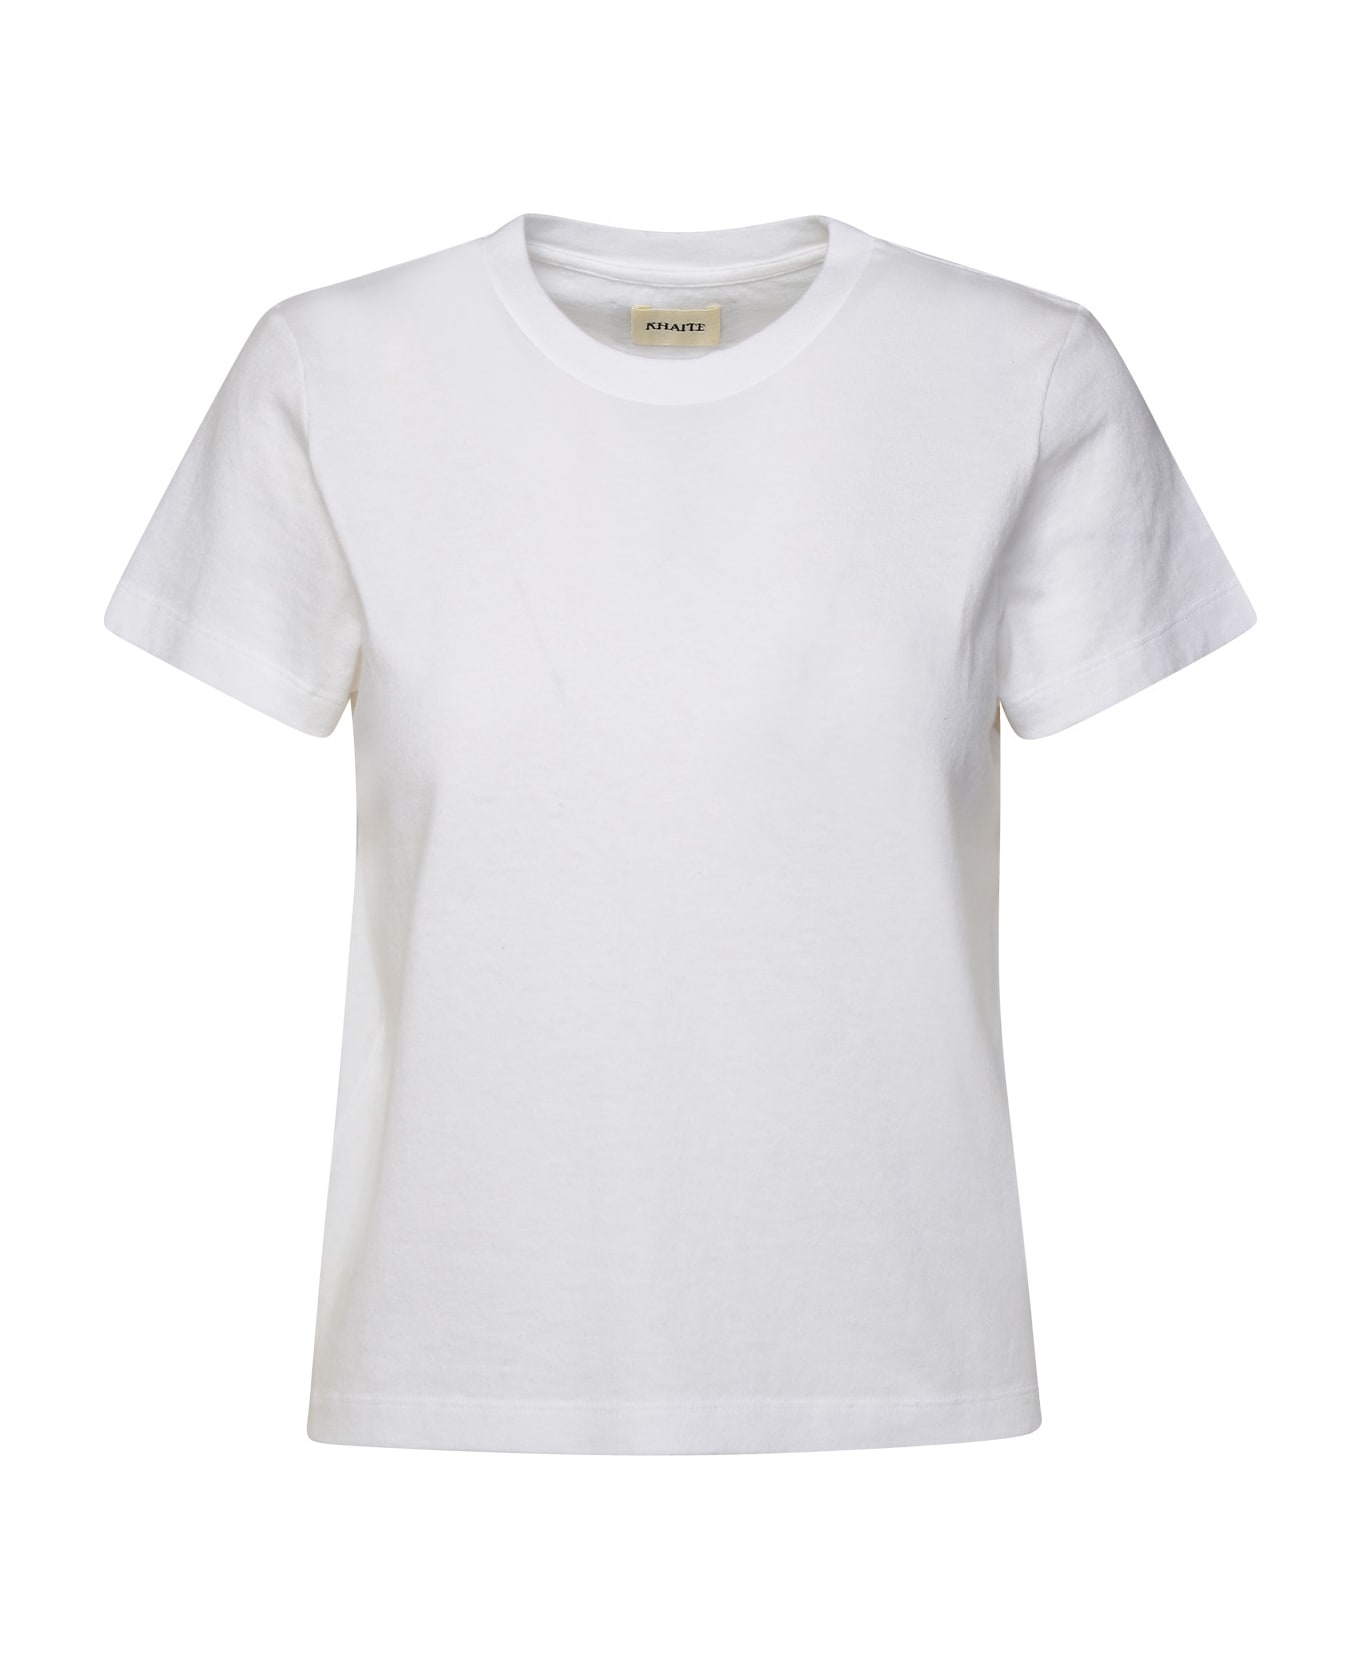 Khaite White Cotton Emmylou T-shirt - White